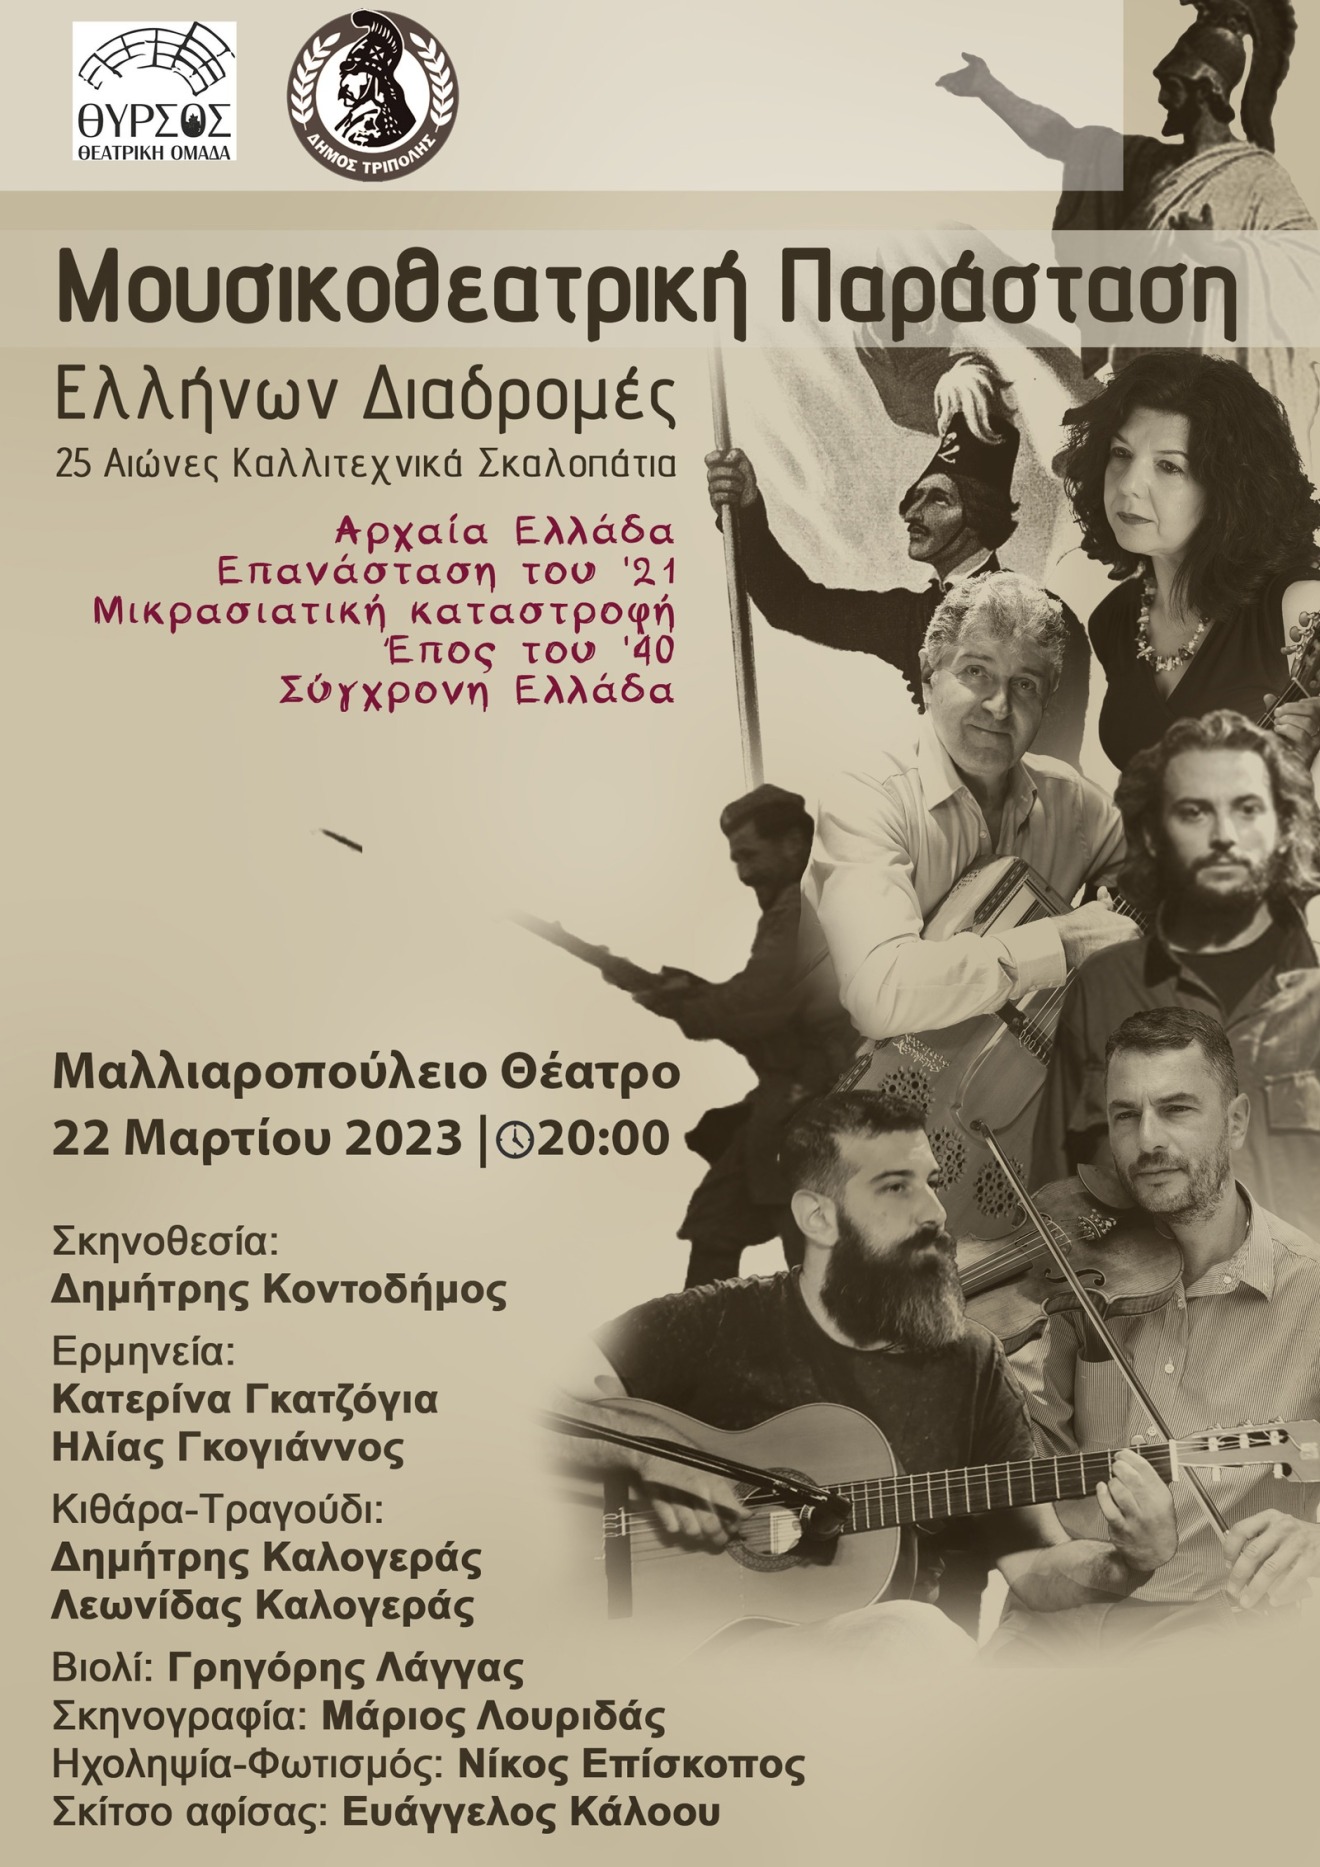 Μουσικοθεατρική παράσταση «Ελλήνων Διαδρομές – 25 Αιώνες Καλλιτεχνικά Σκαλοπάτια»